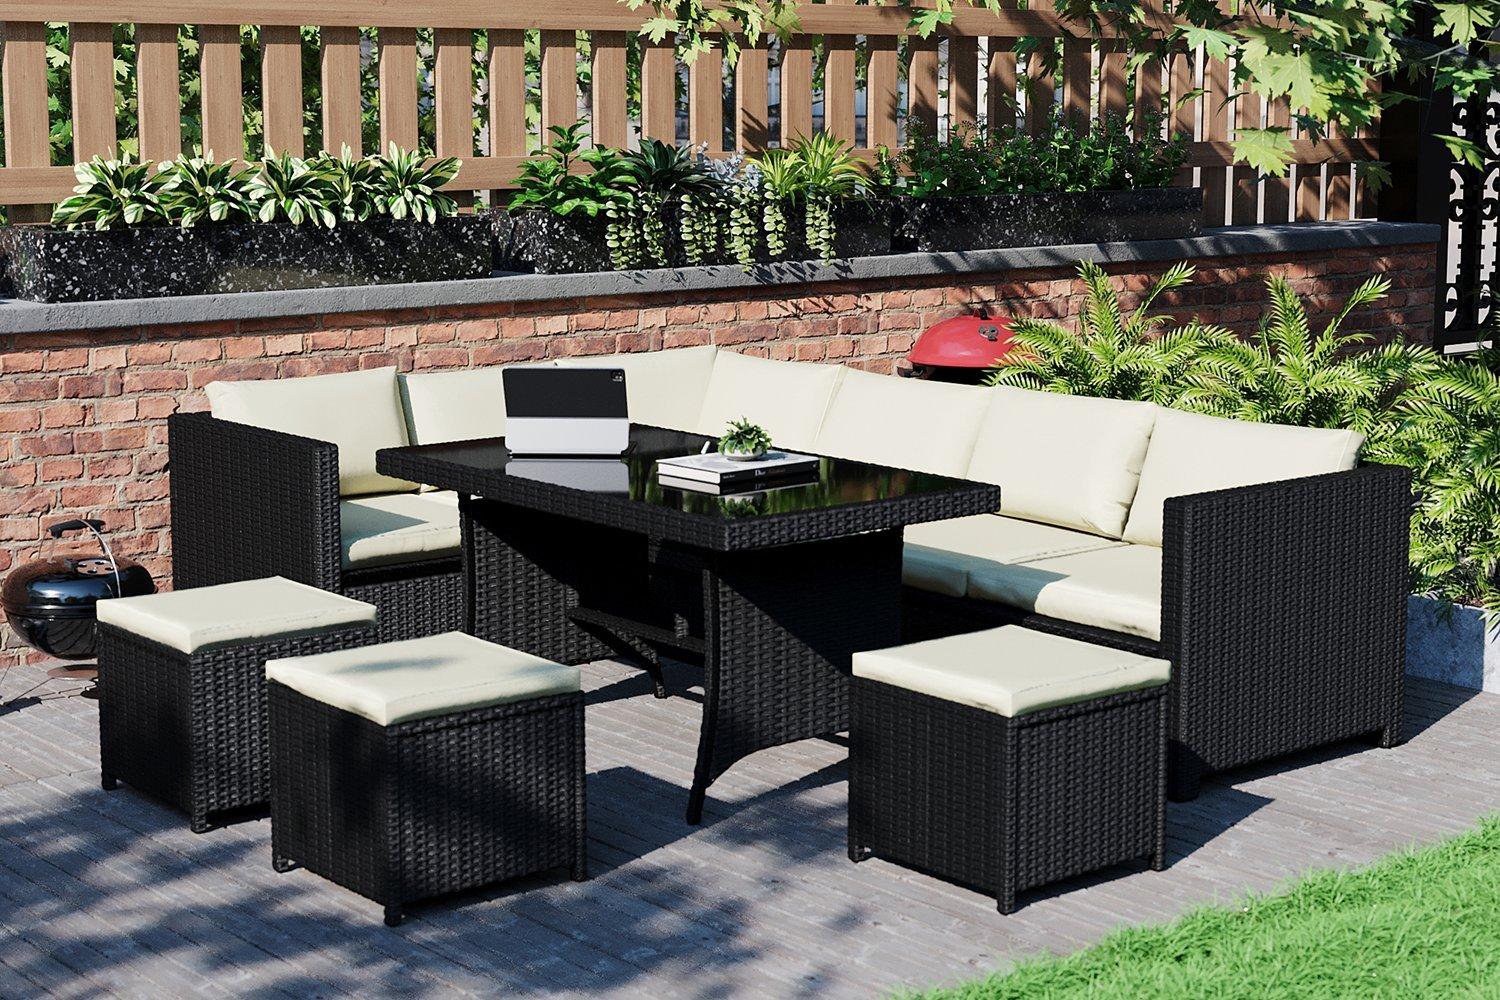 10 Pc Garden Vida Belgrave 9 Seater Rattan Set Outdoor Garden Furniture - 3 Seater Sofa, 3 Seater Co